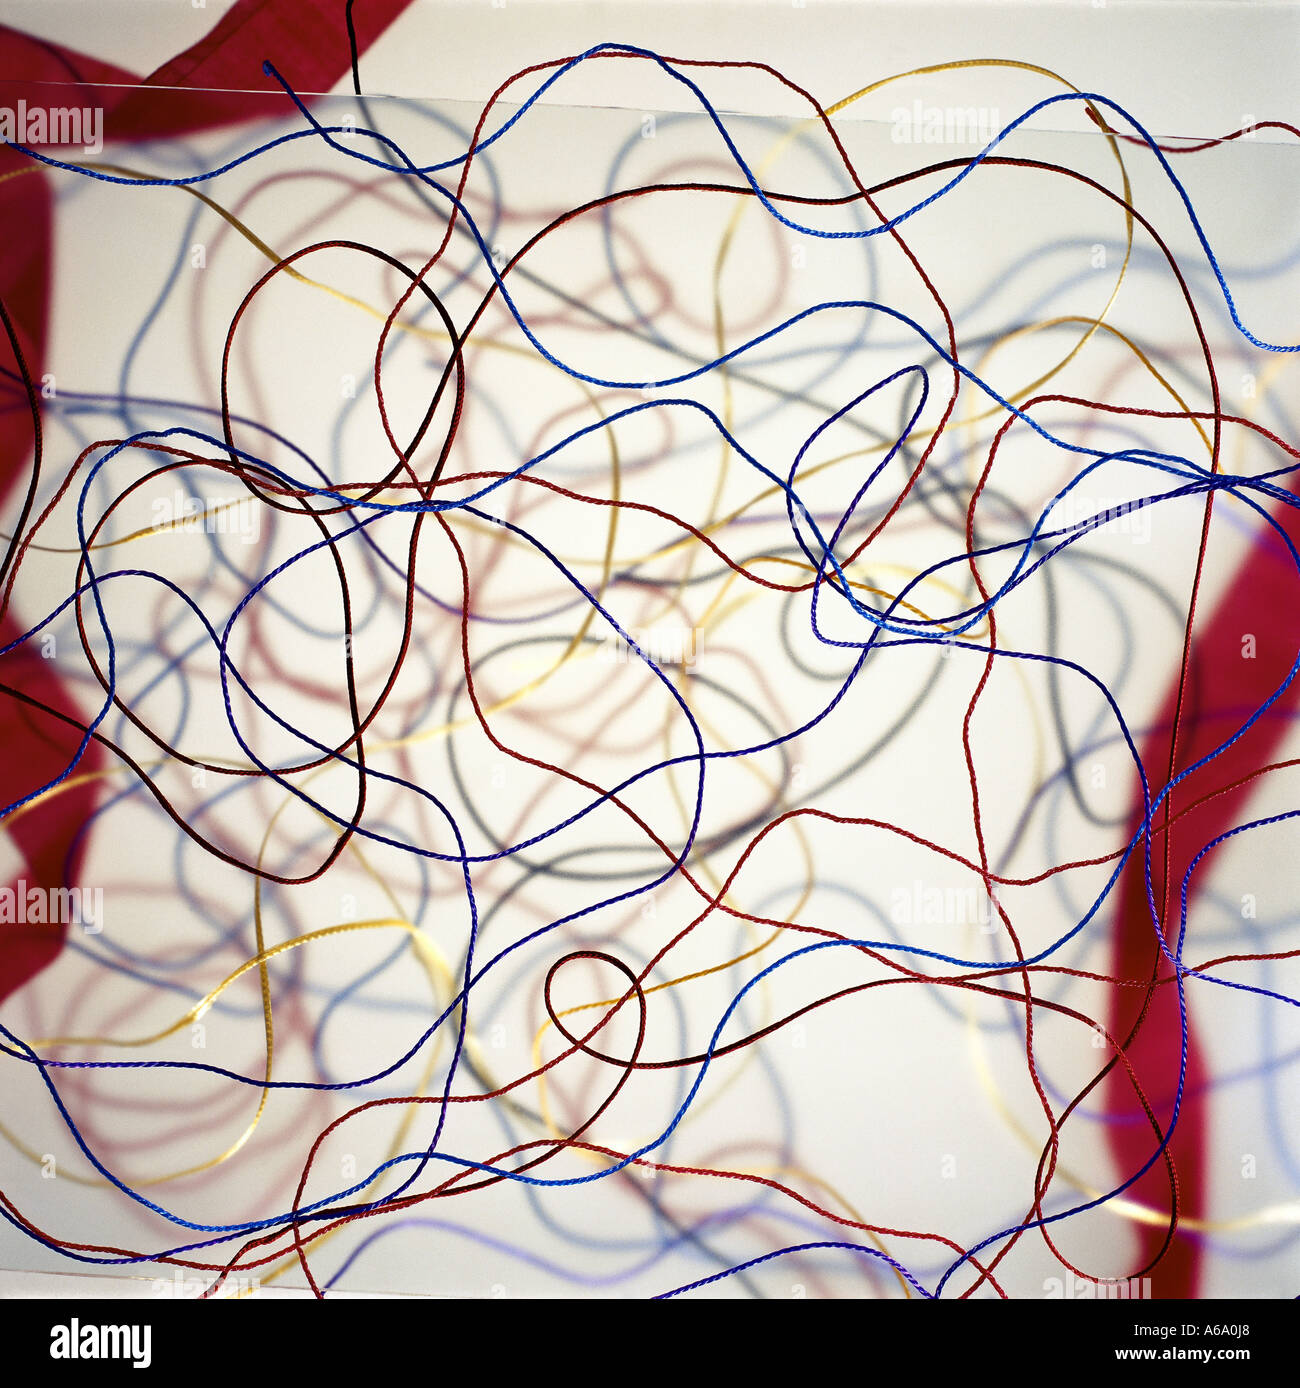 VDA77211 una impresión de Jackson Pollack Bodegón de coloridas cuerdas en varias capas. Foto de stock